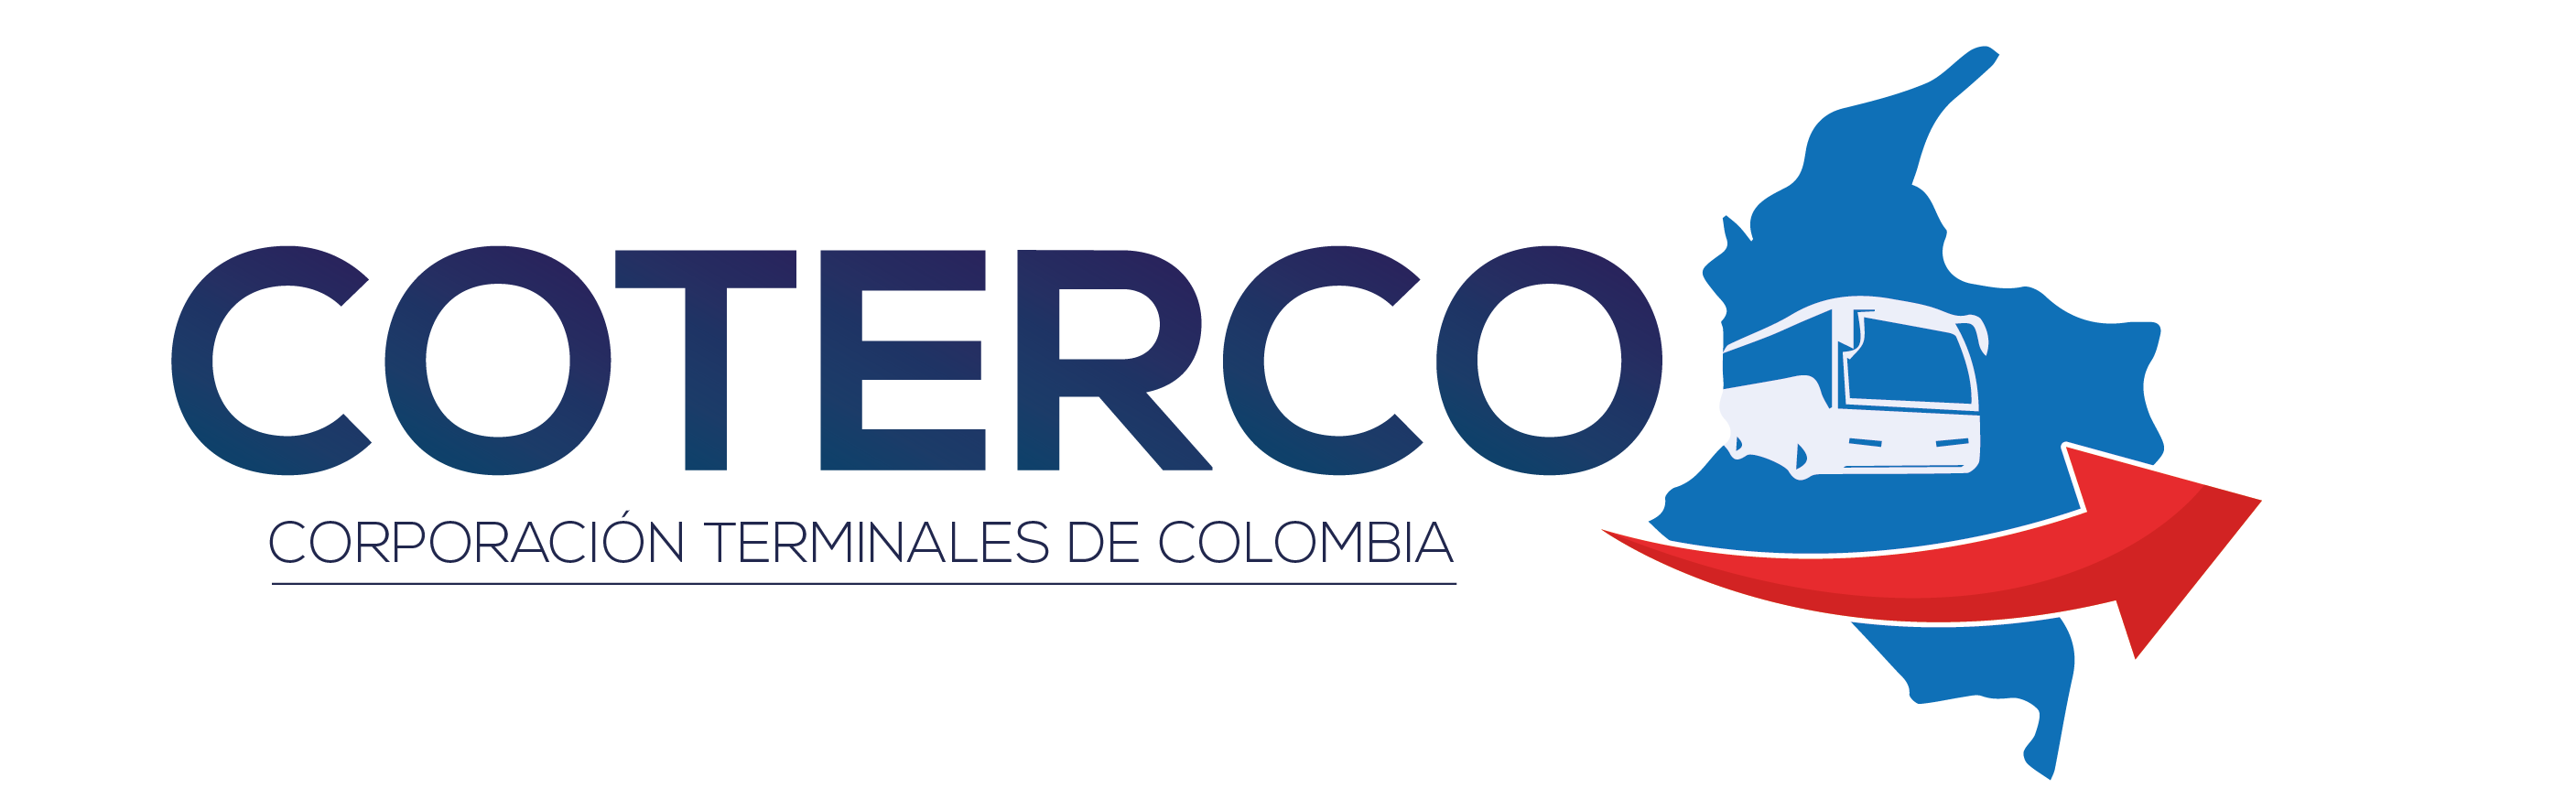 Coterco Corporación Terminales de Colombia